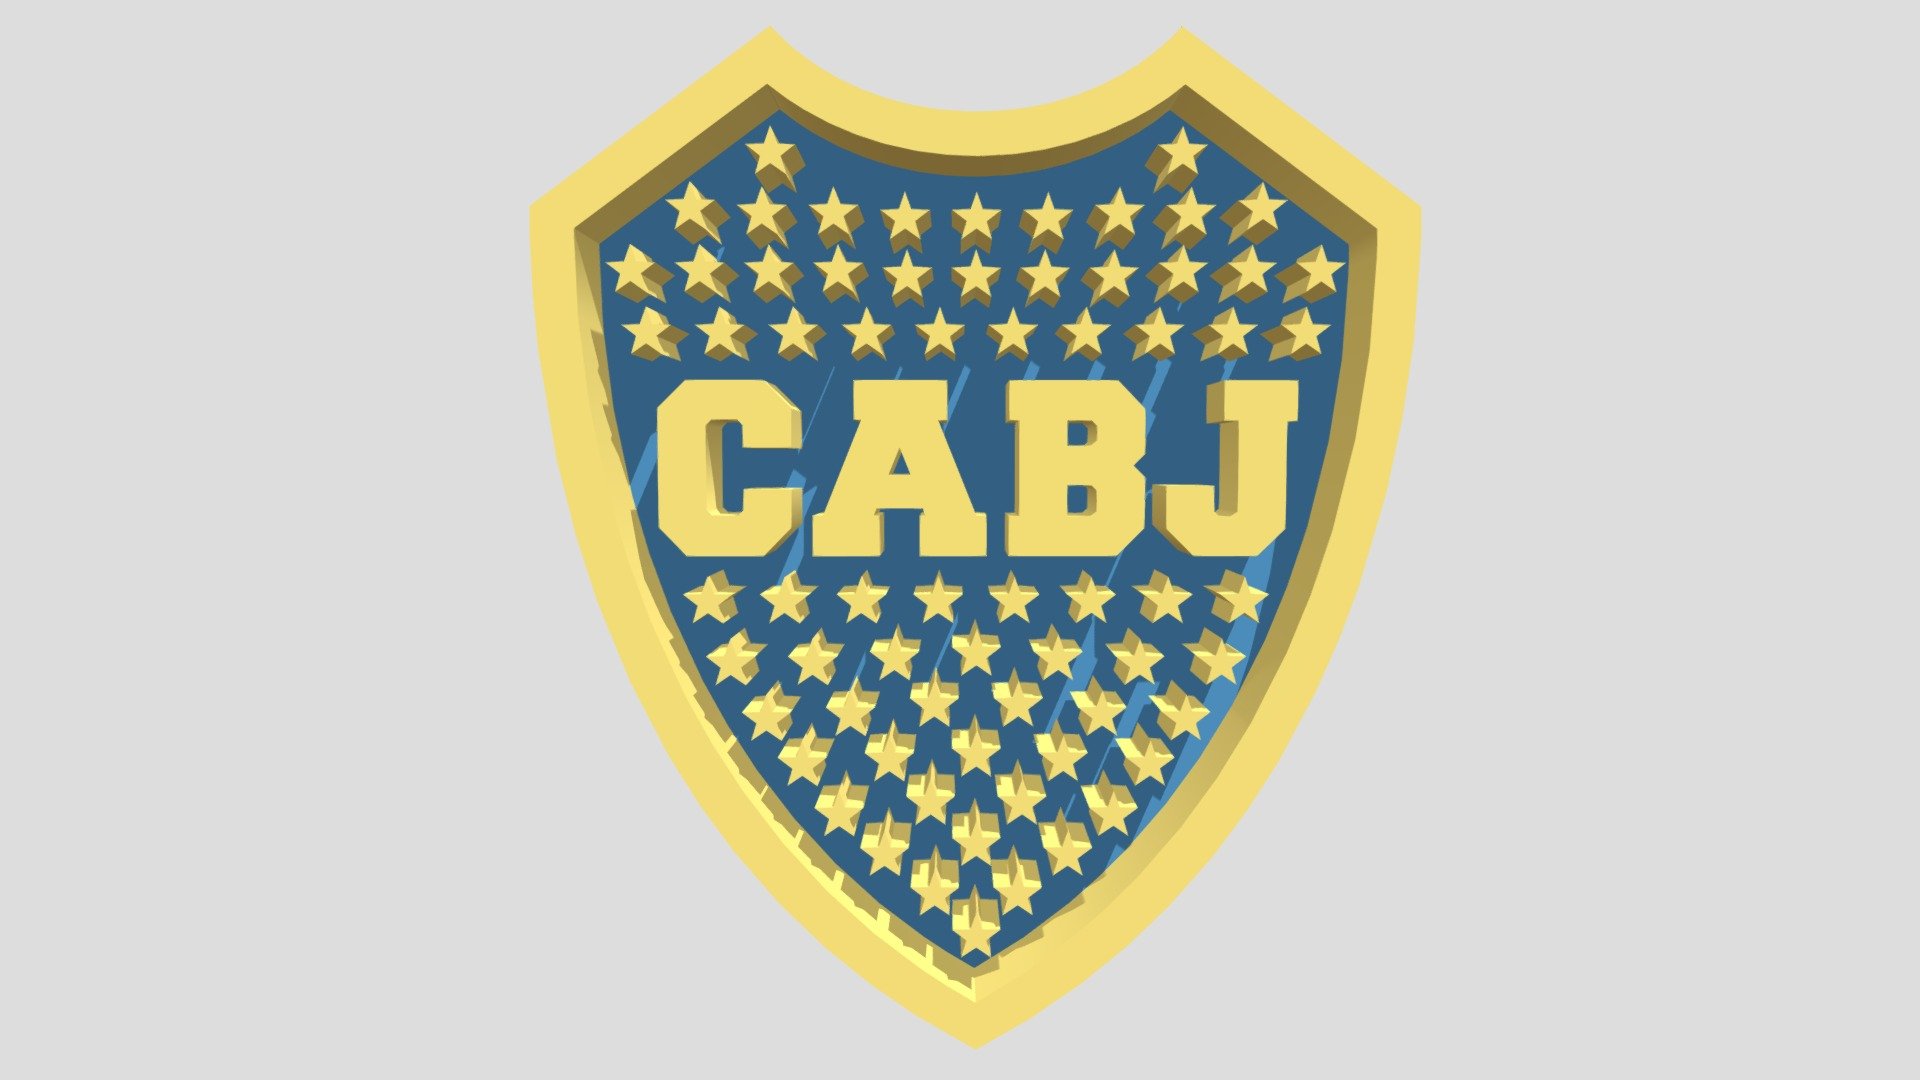 SPANISH DESCRIPTION / DESCRIPCIÓN EN ESPAÑOL
Este es el Escudo 3D del &ldquo;Club Atlético Boca Juniors (CABJ)